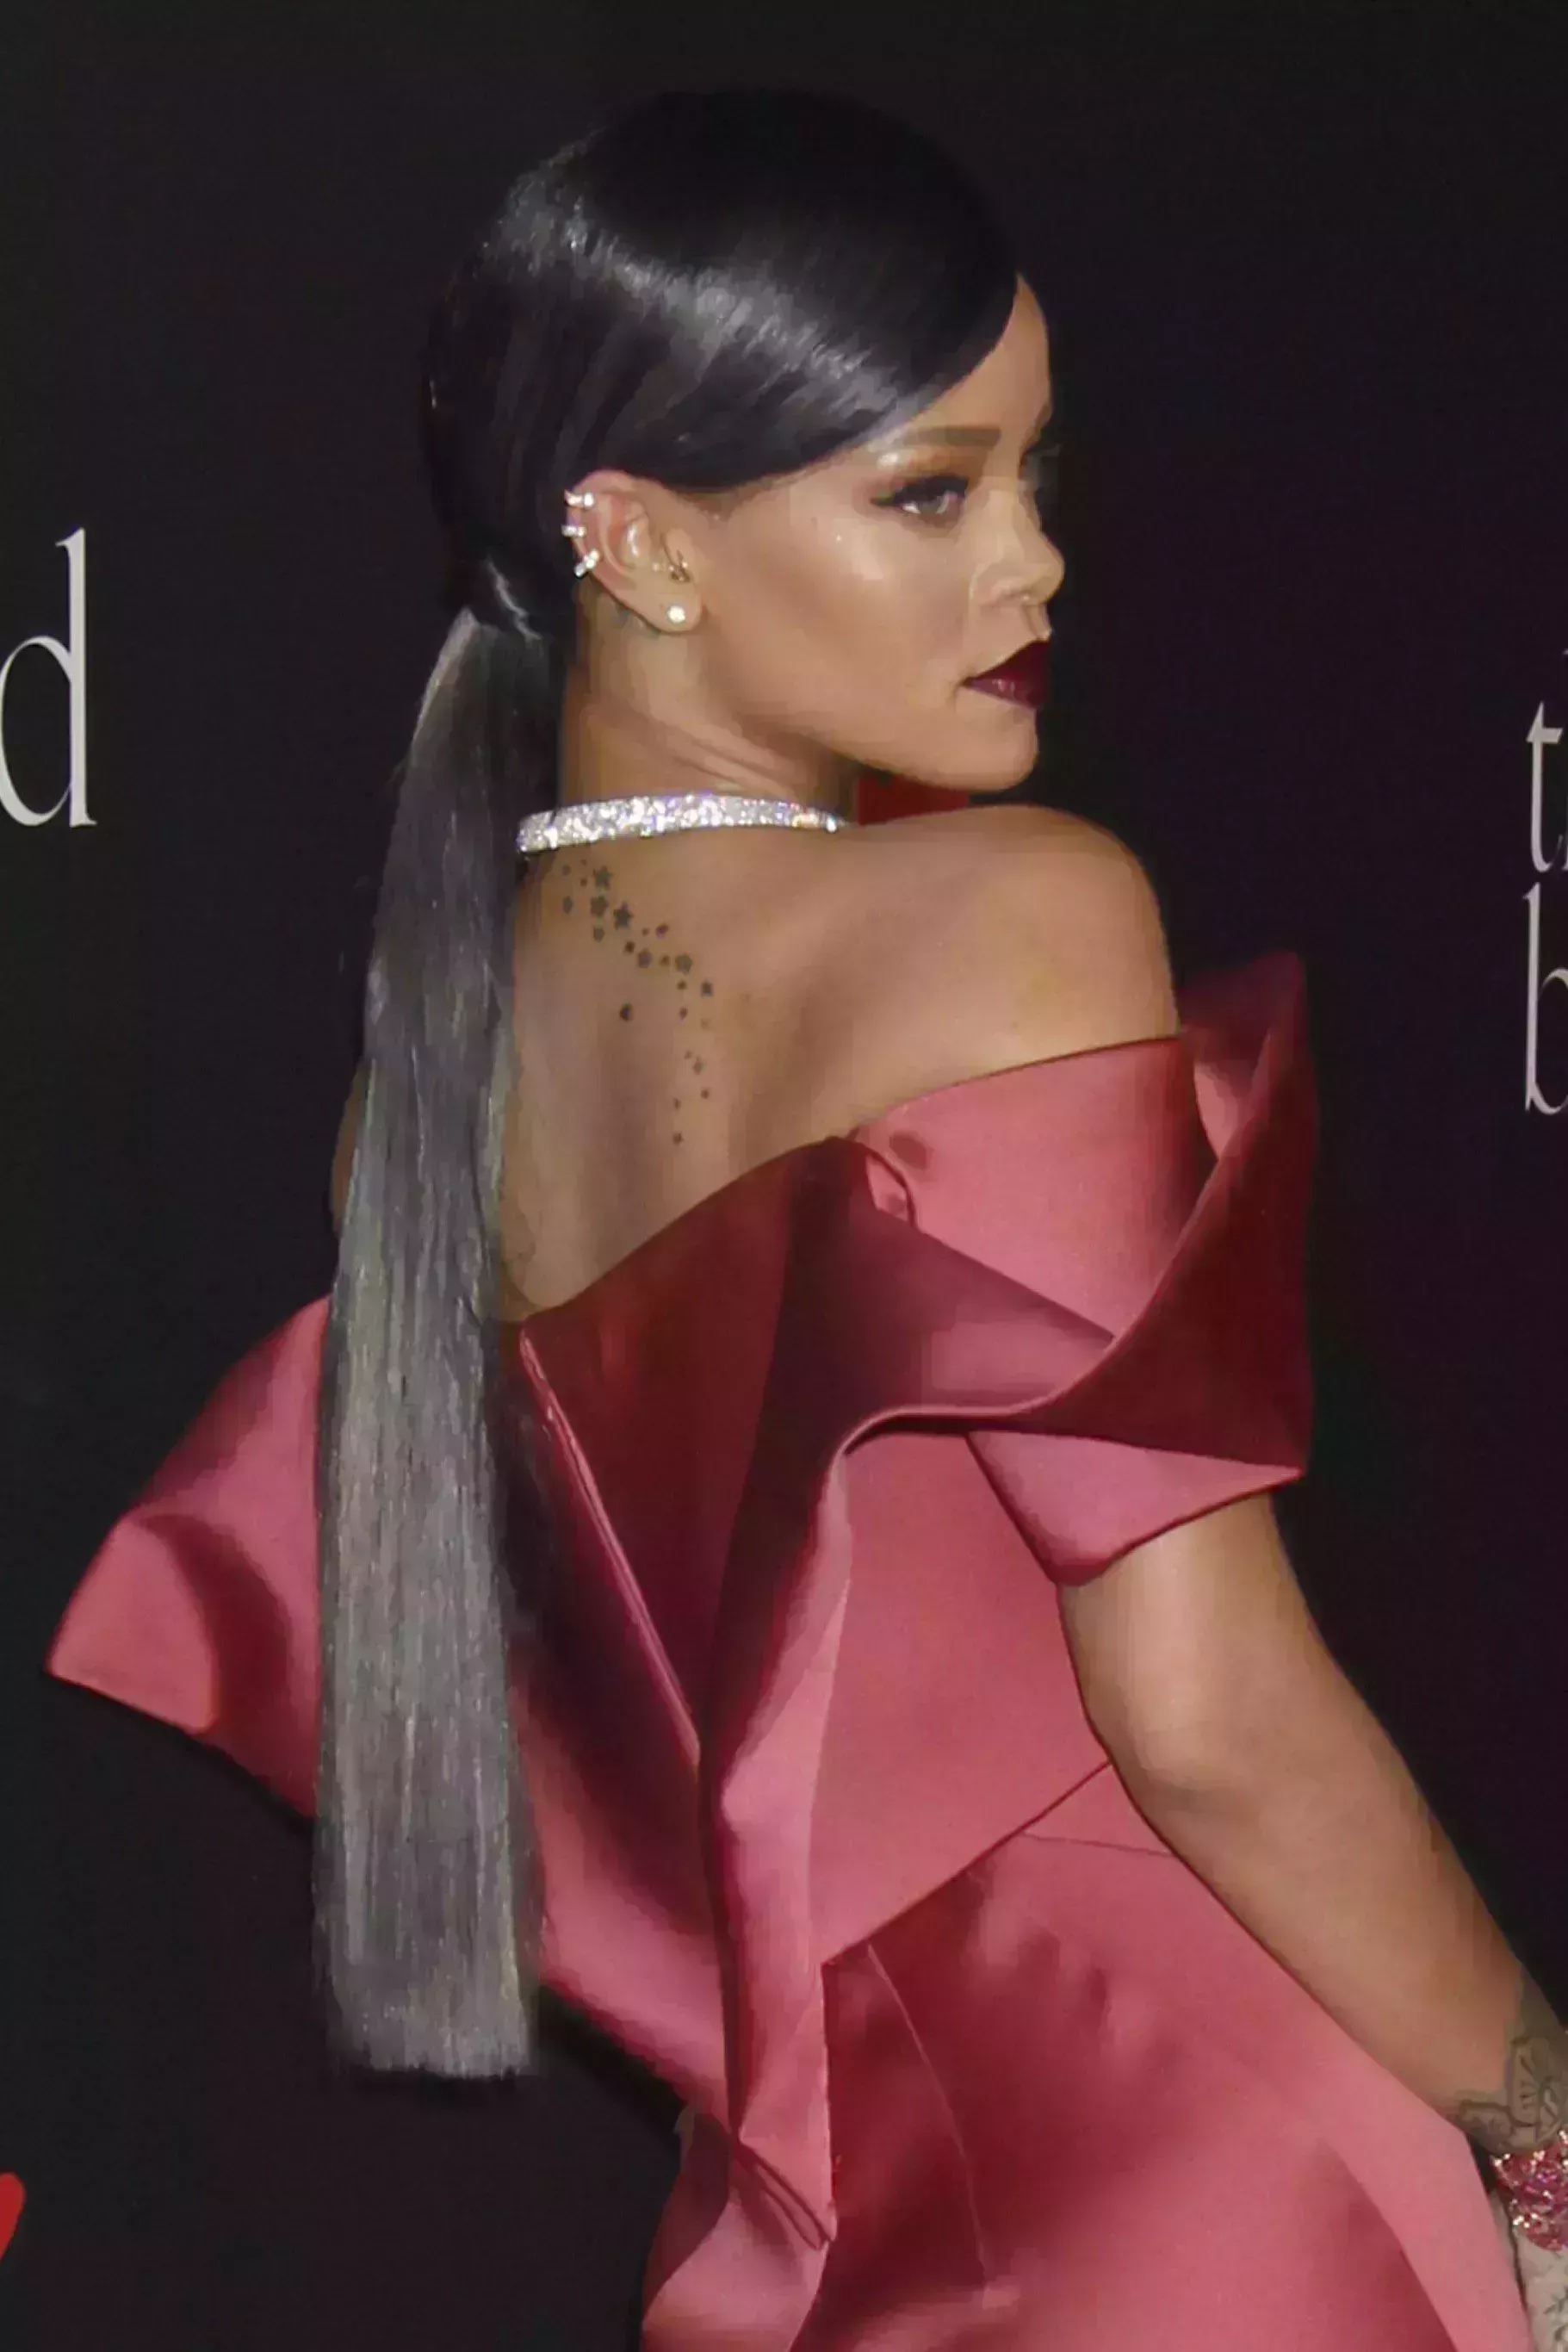 Rihanna’s Black Hair with Silver Highlights